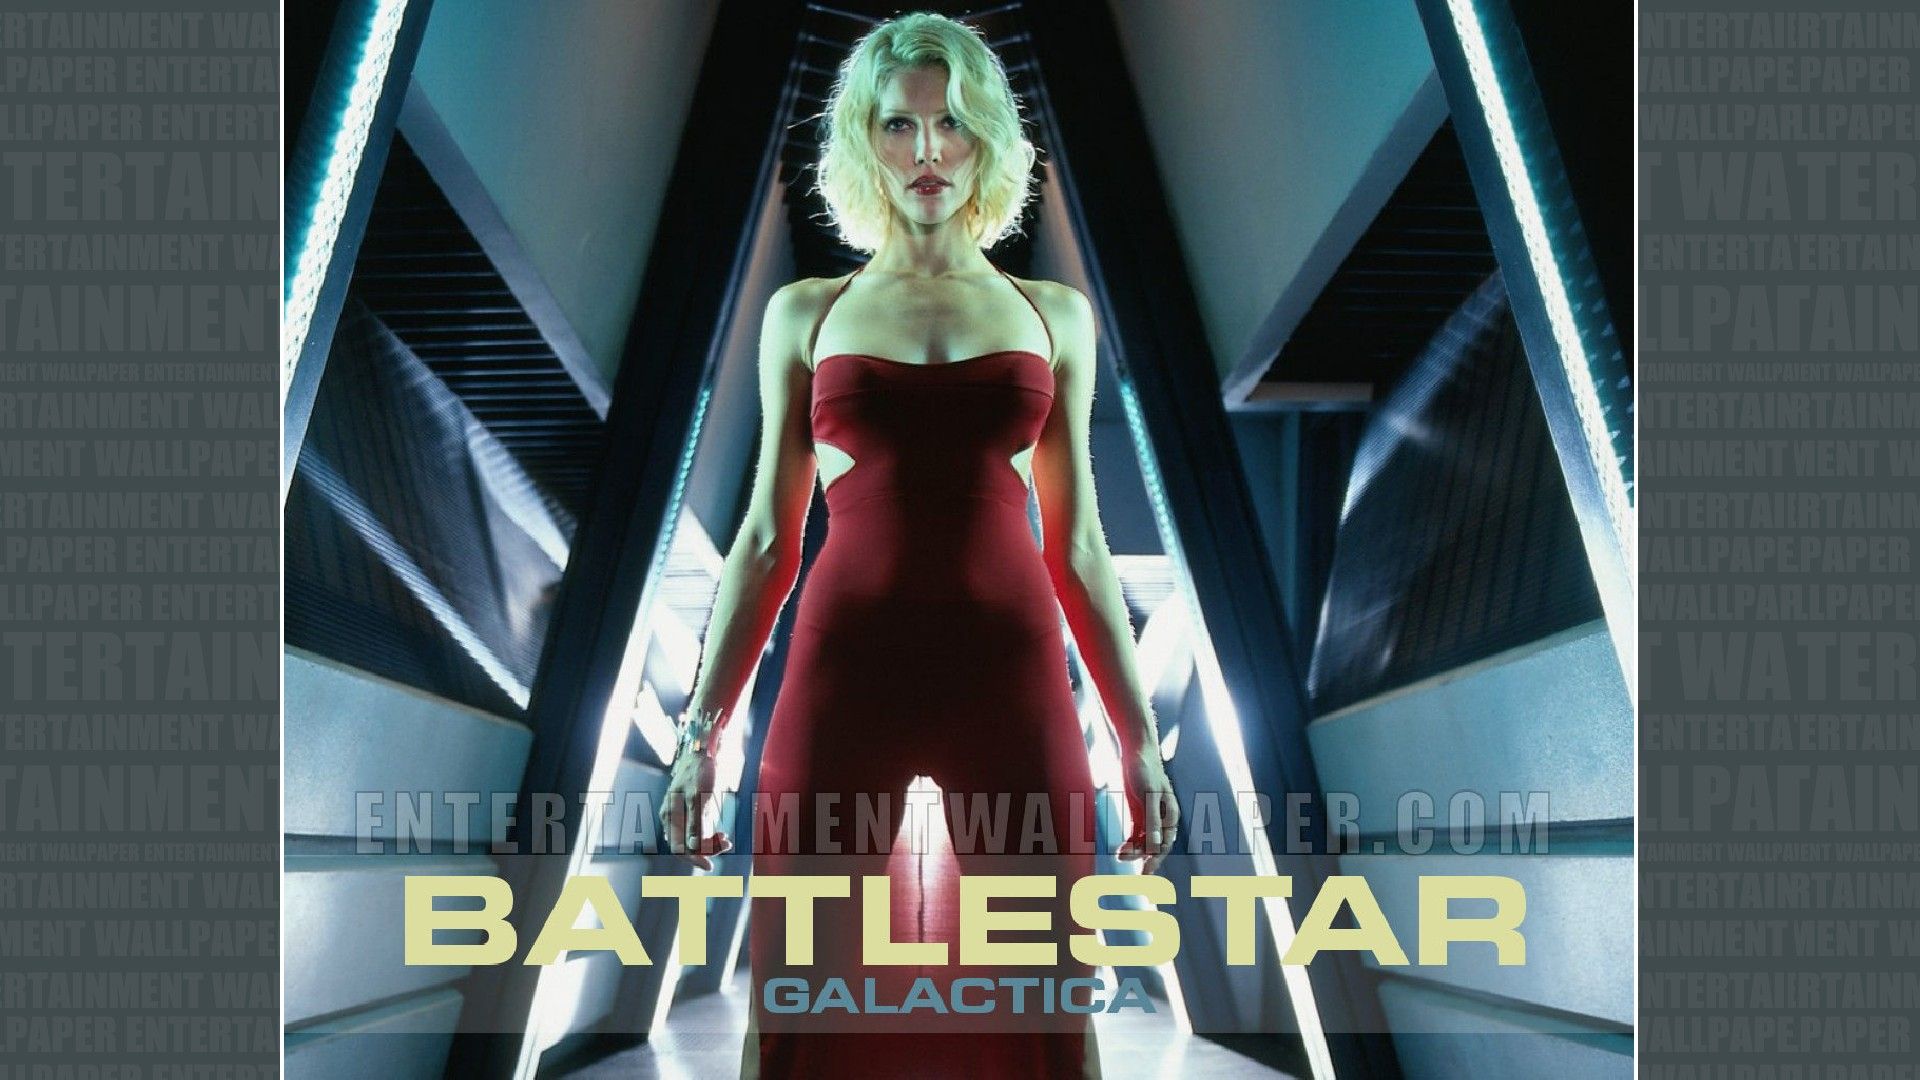 Battlestar Galactica Wallpaper - 1920x1080 Desktop